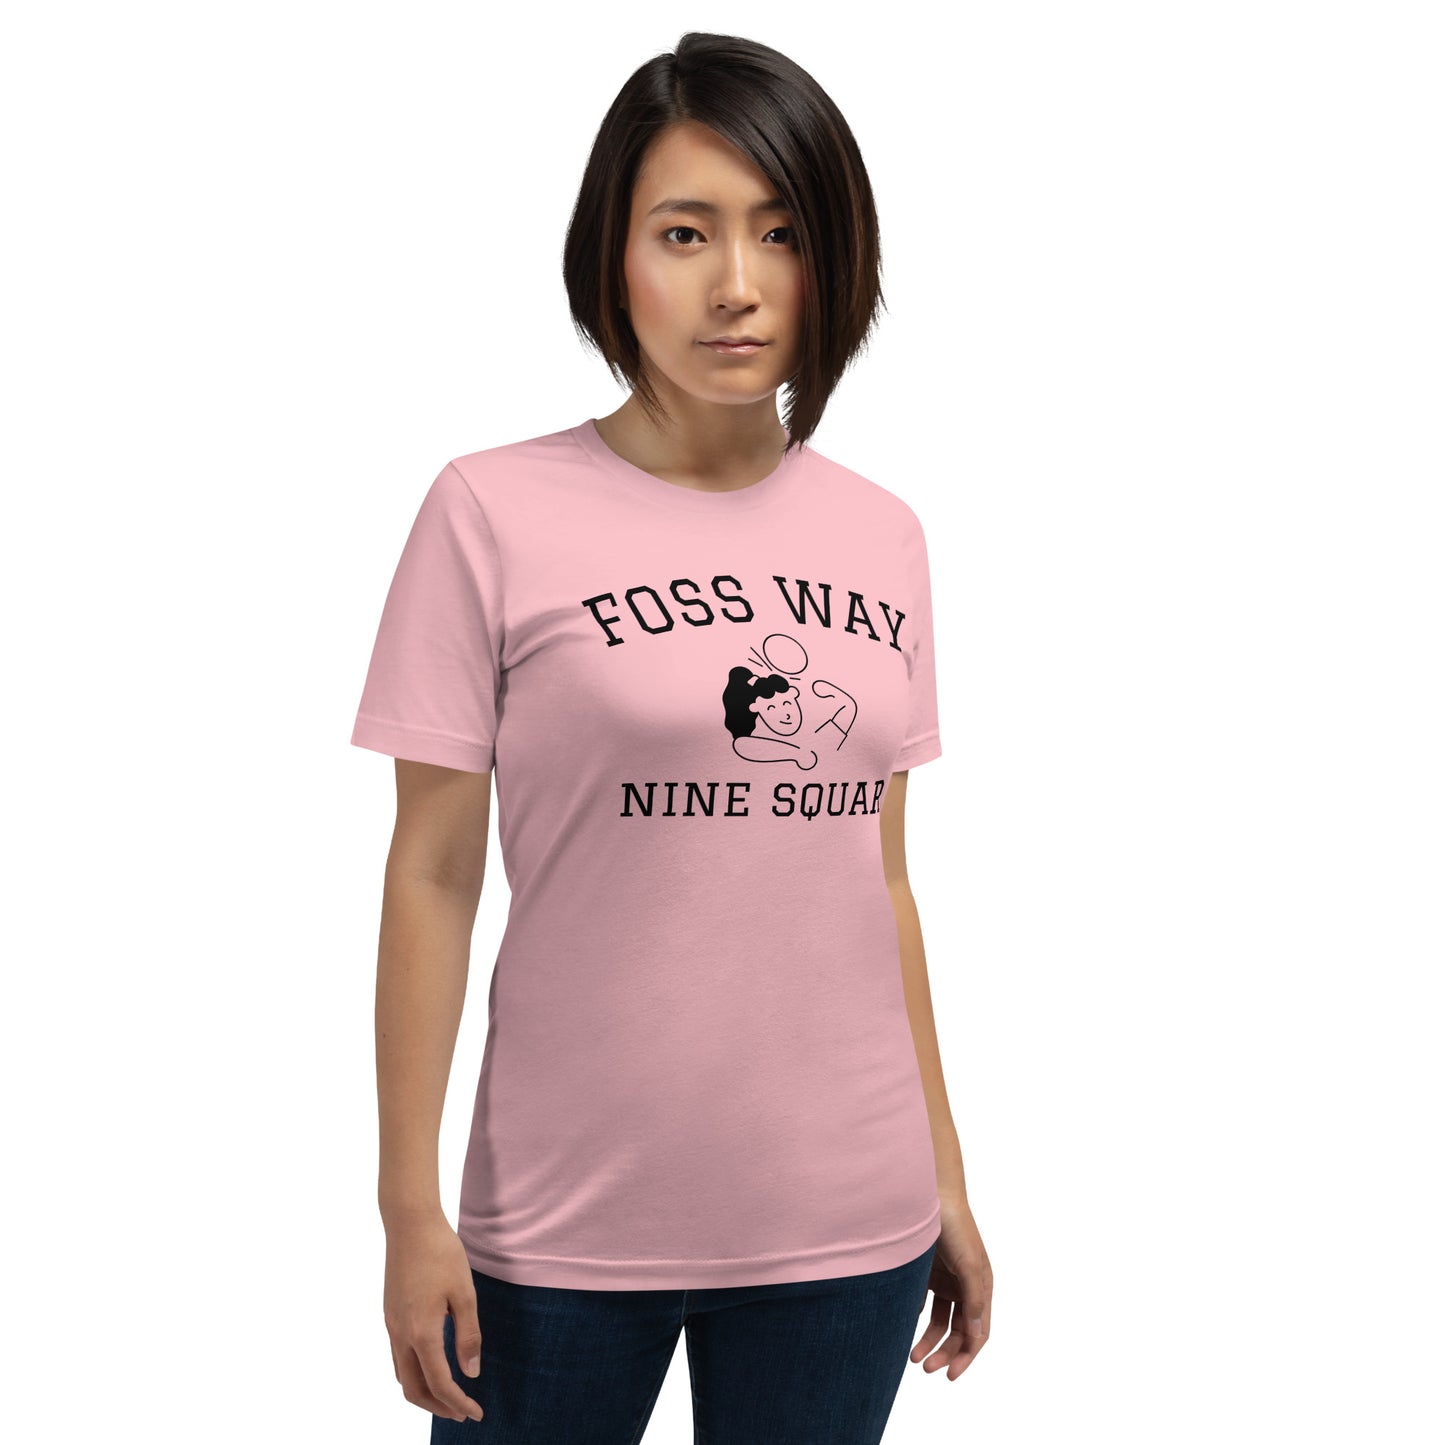 Foss Way Nine Square Women's T-shirt